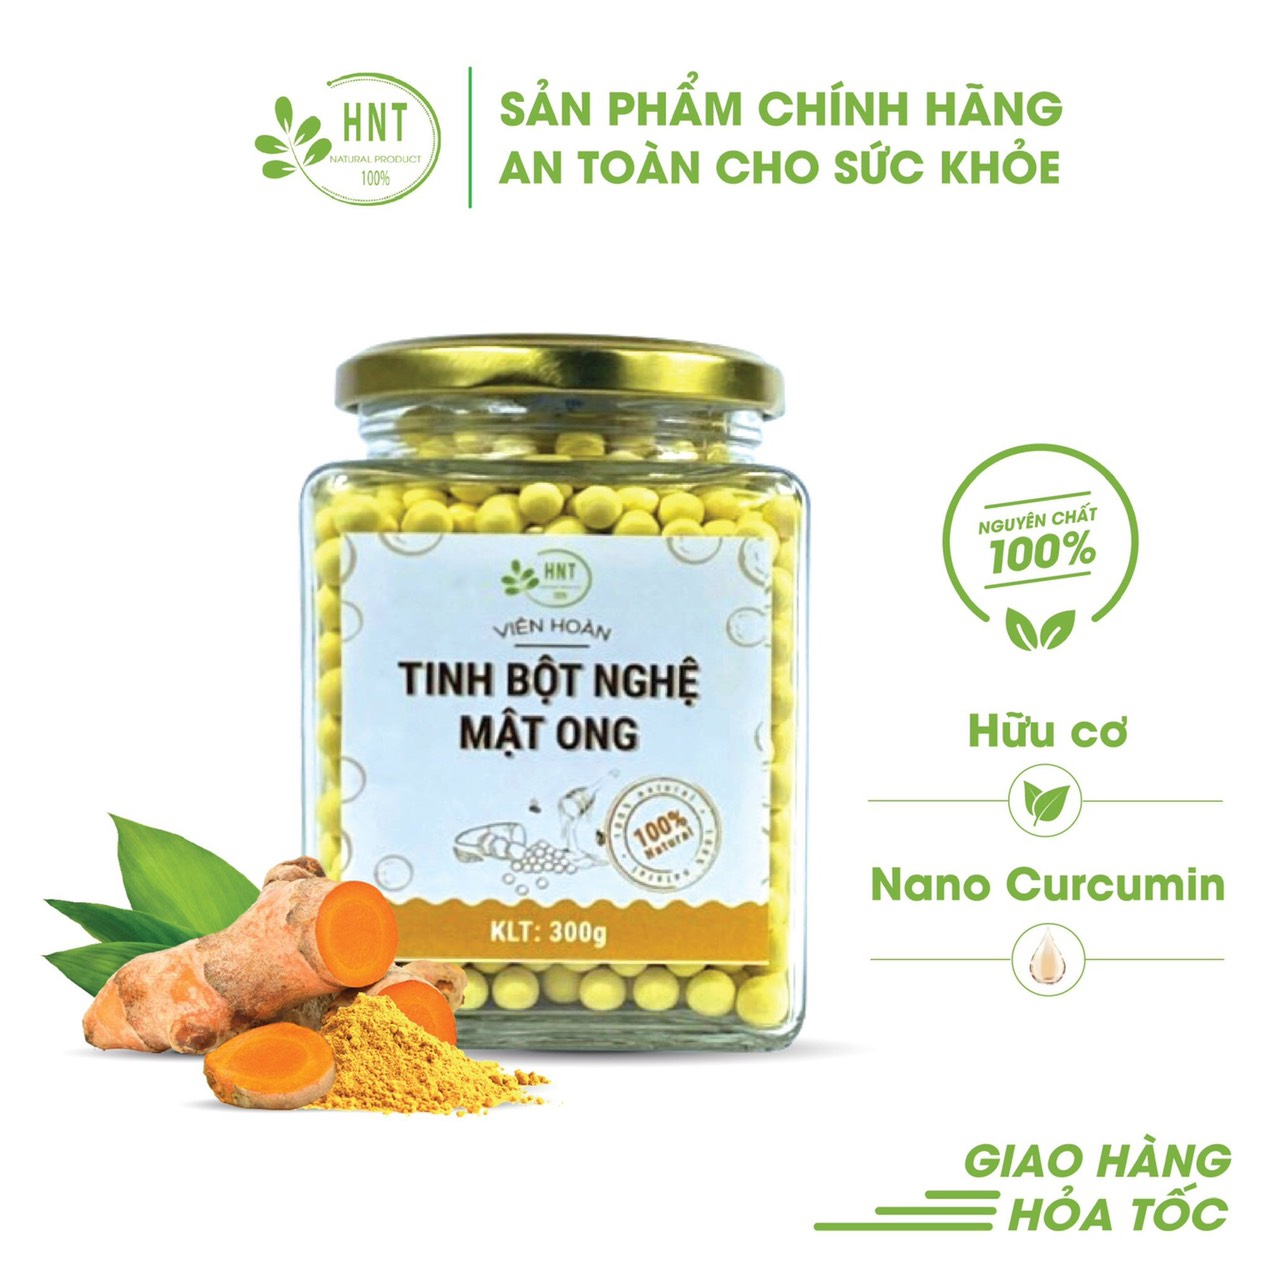 Tinh bột nghệ mật ong - Công Ty TNHH Nông Sản Sạch HNT